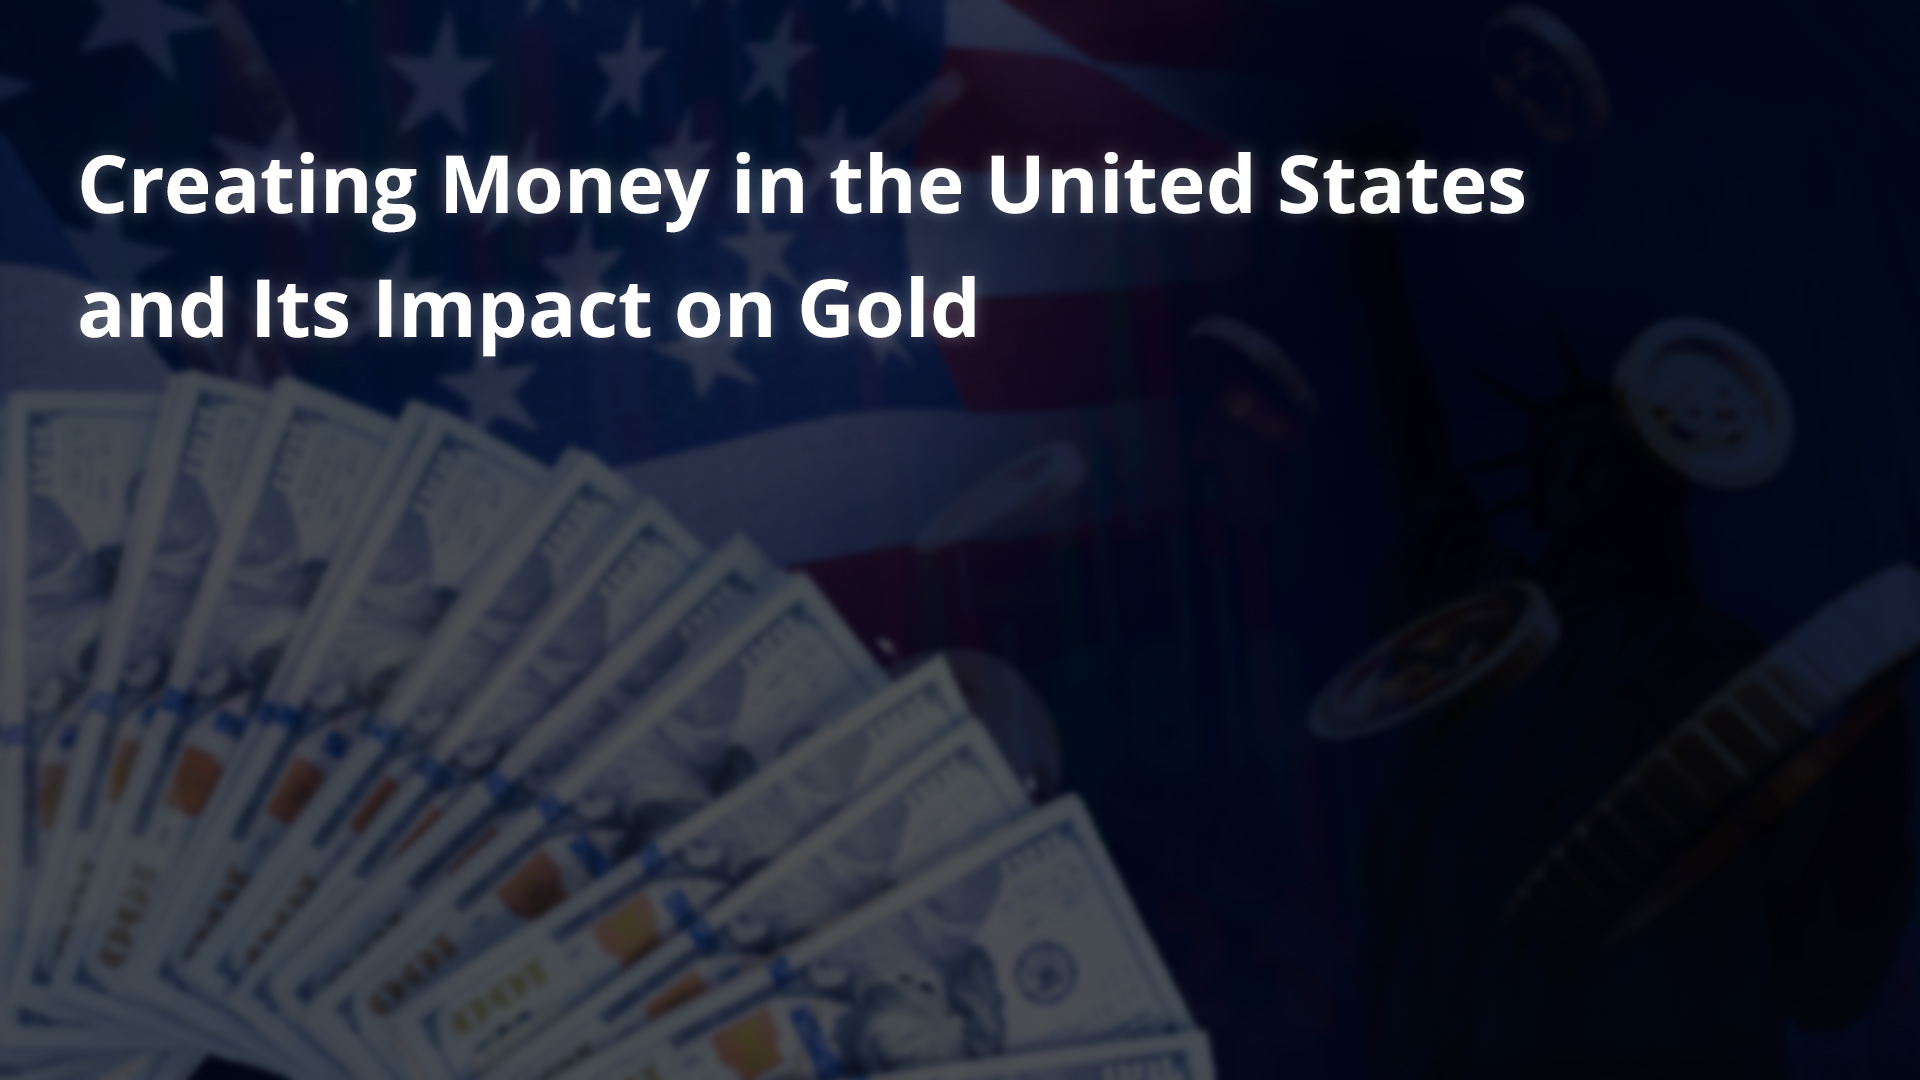 La creazione di moneta negli Stati Uniti e il suo impatto sull’oro